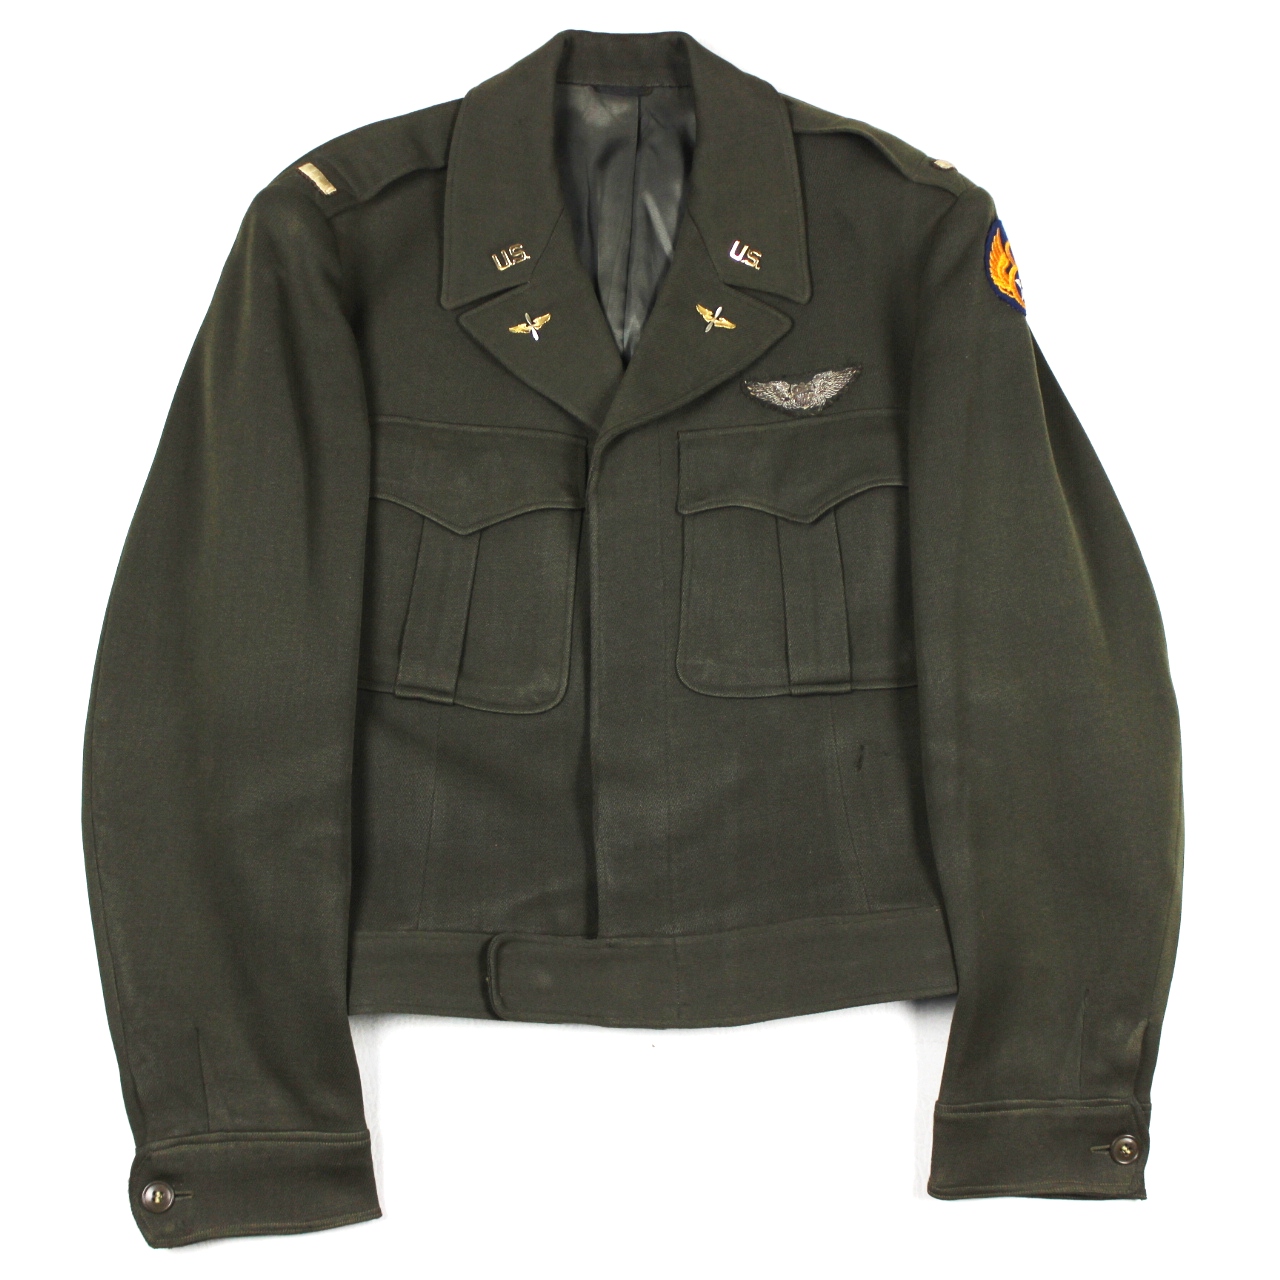 USAAF officer's Ike jacket - 8th AF/ bullion wings